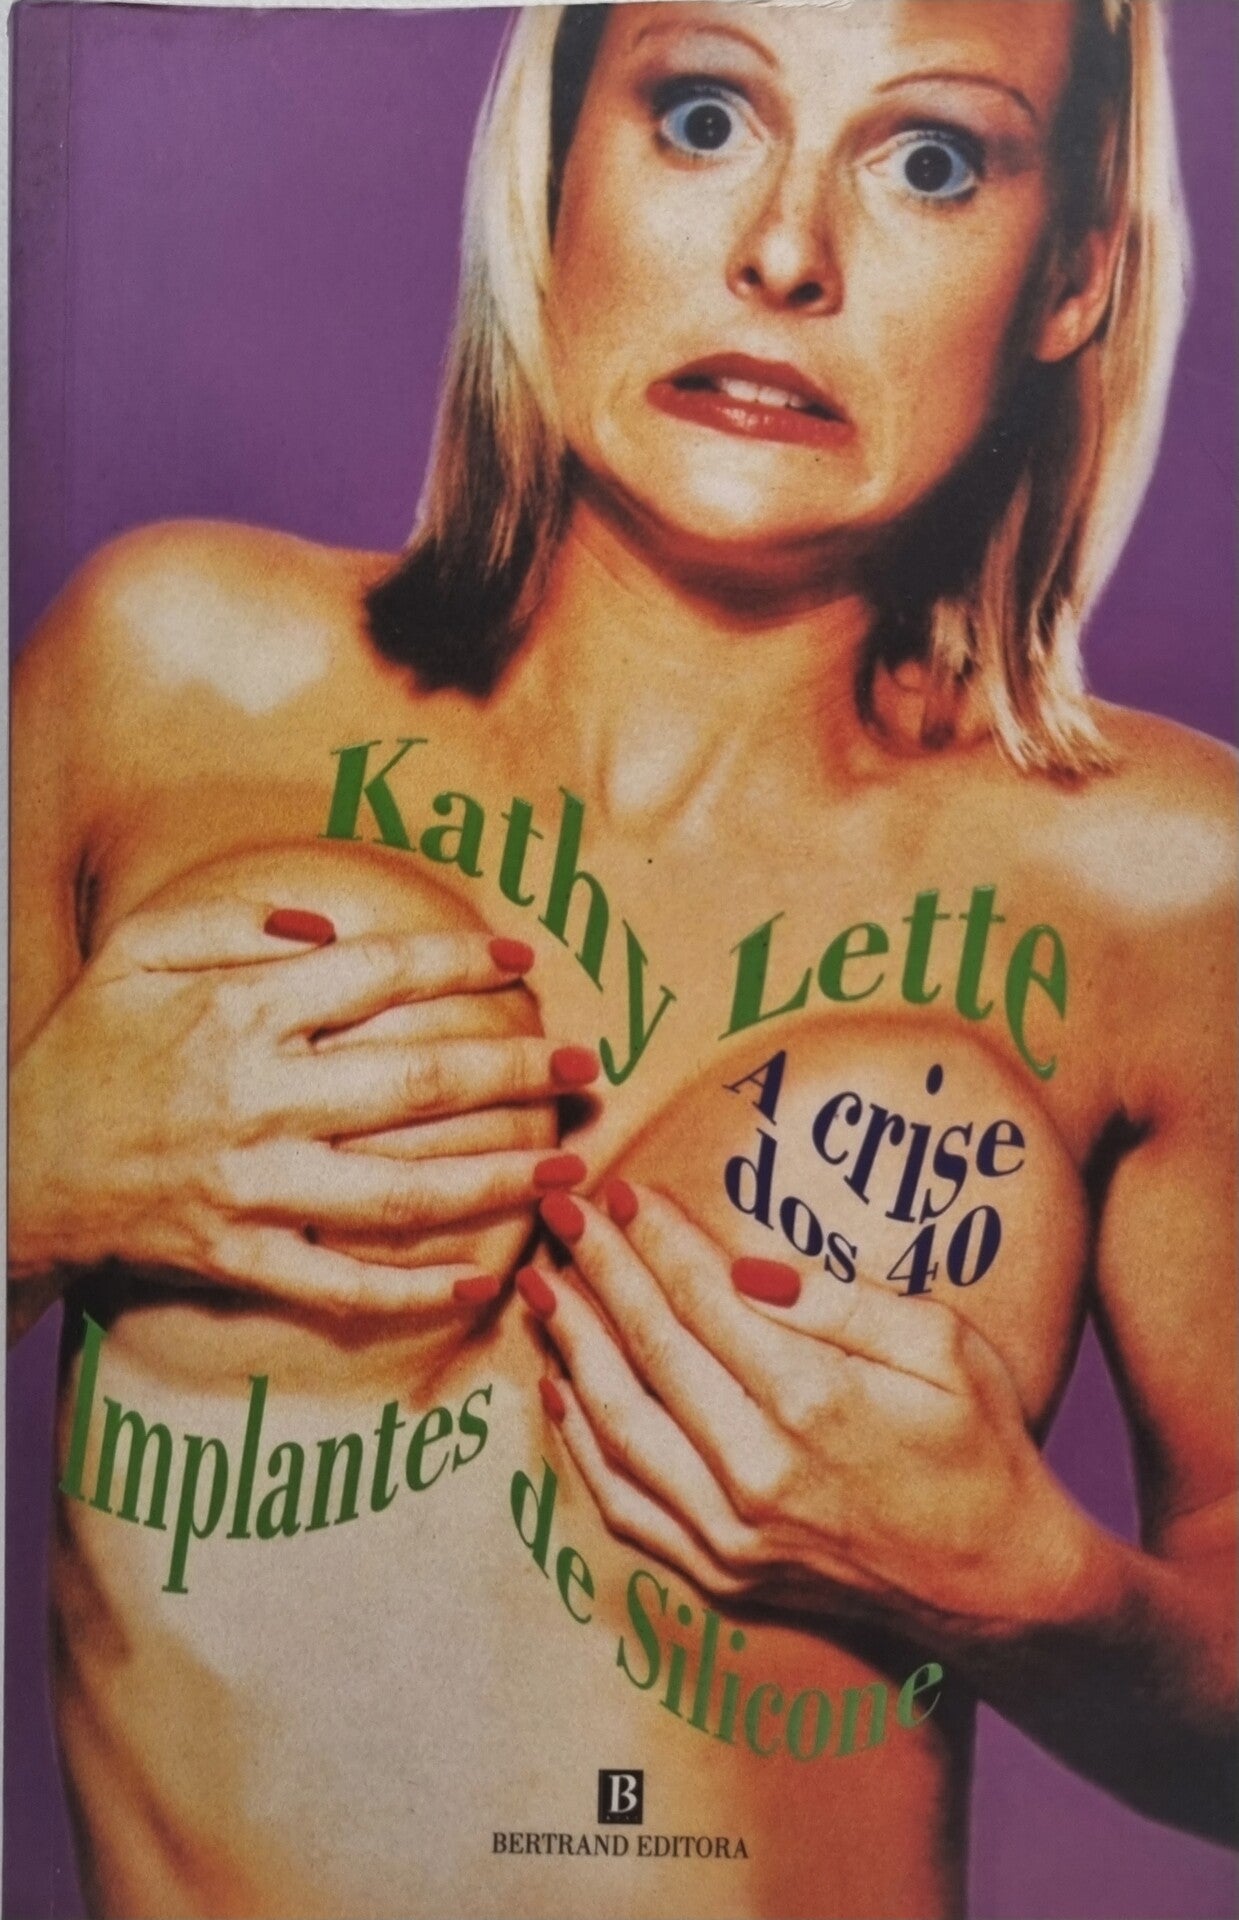 Implantes de silicone : a crise dos 40 / Kathy Lette